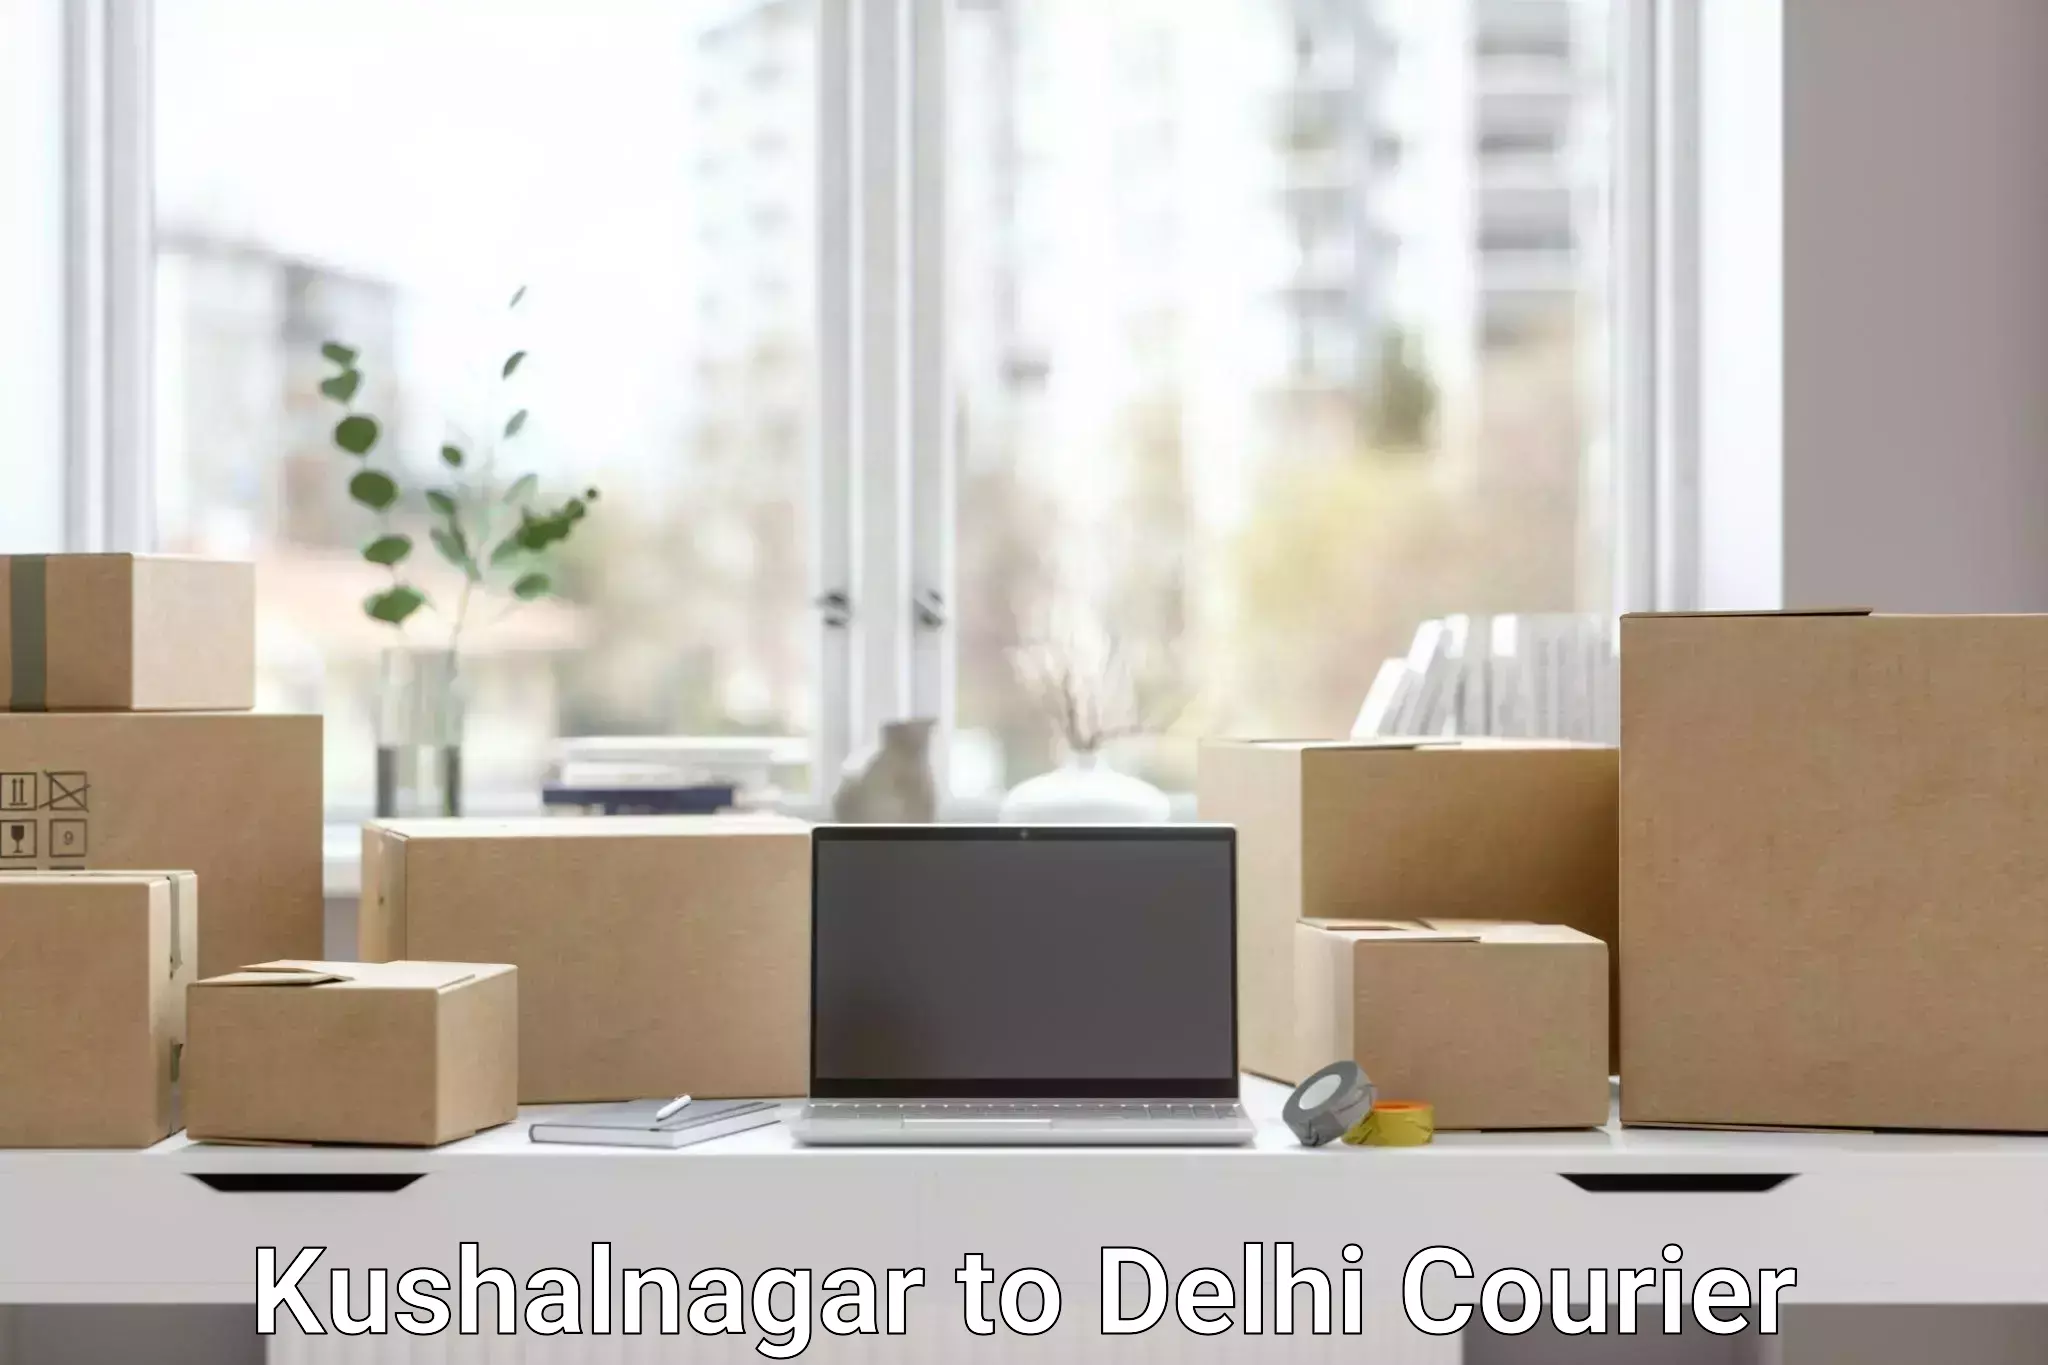 High-capacity parcel service Kushalnagar to Sarojini Nagar